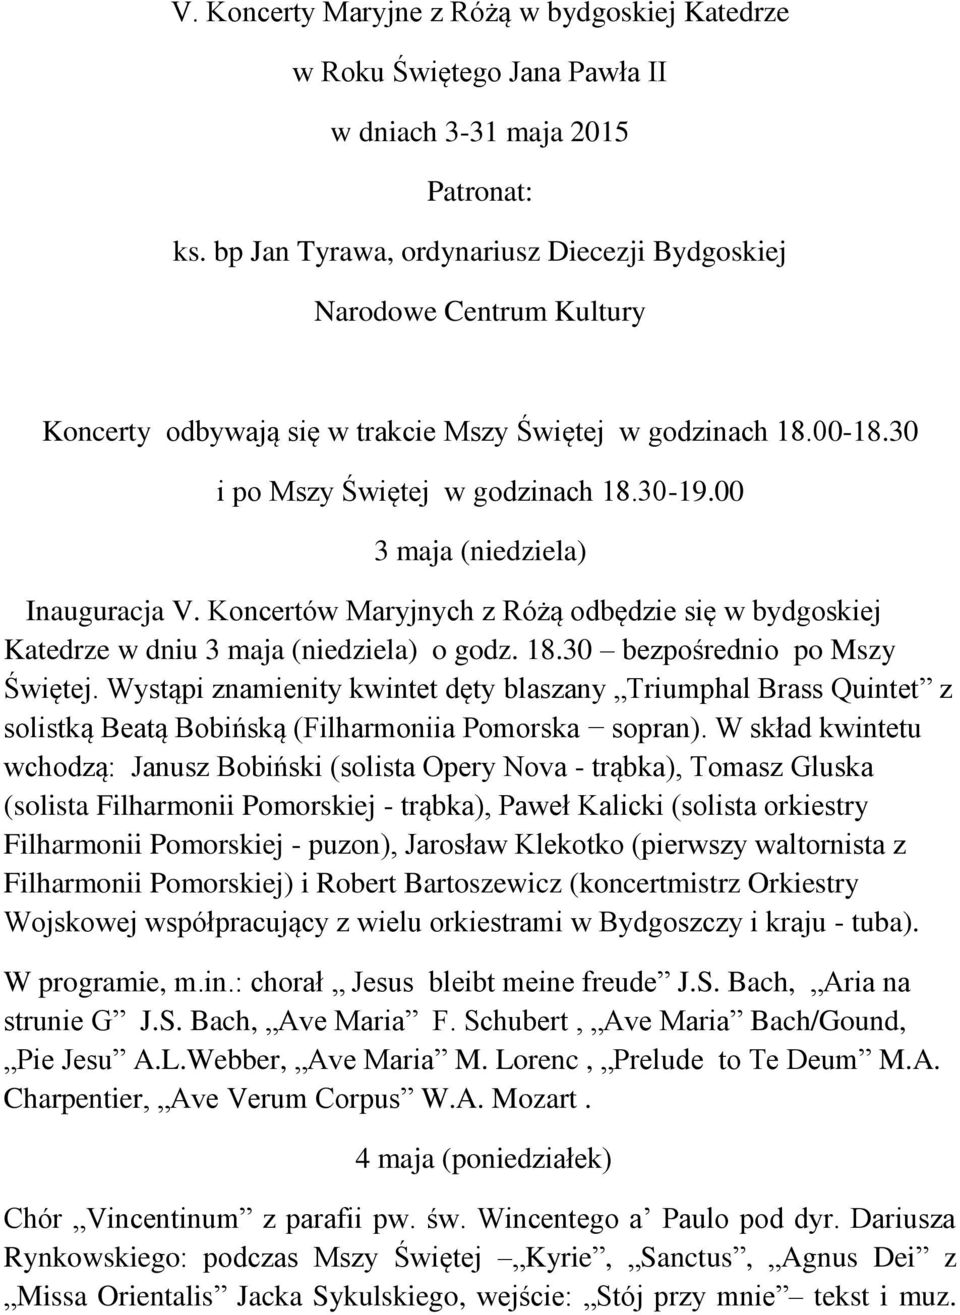 00 3 maja (niedziela) Inauguracja V. Koncertów Maryjnych z Różą odbędzie się w bydgoskiej Katedrze w dniu 3 maja (niedziela) o godz. 18.30 bezpośrednio po Mszy Świętej.